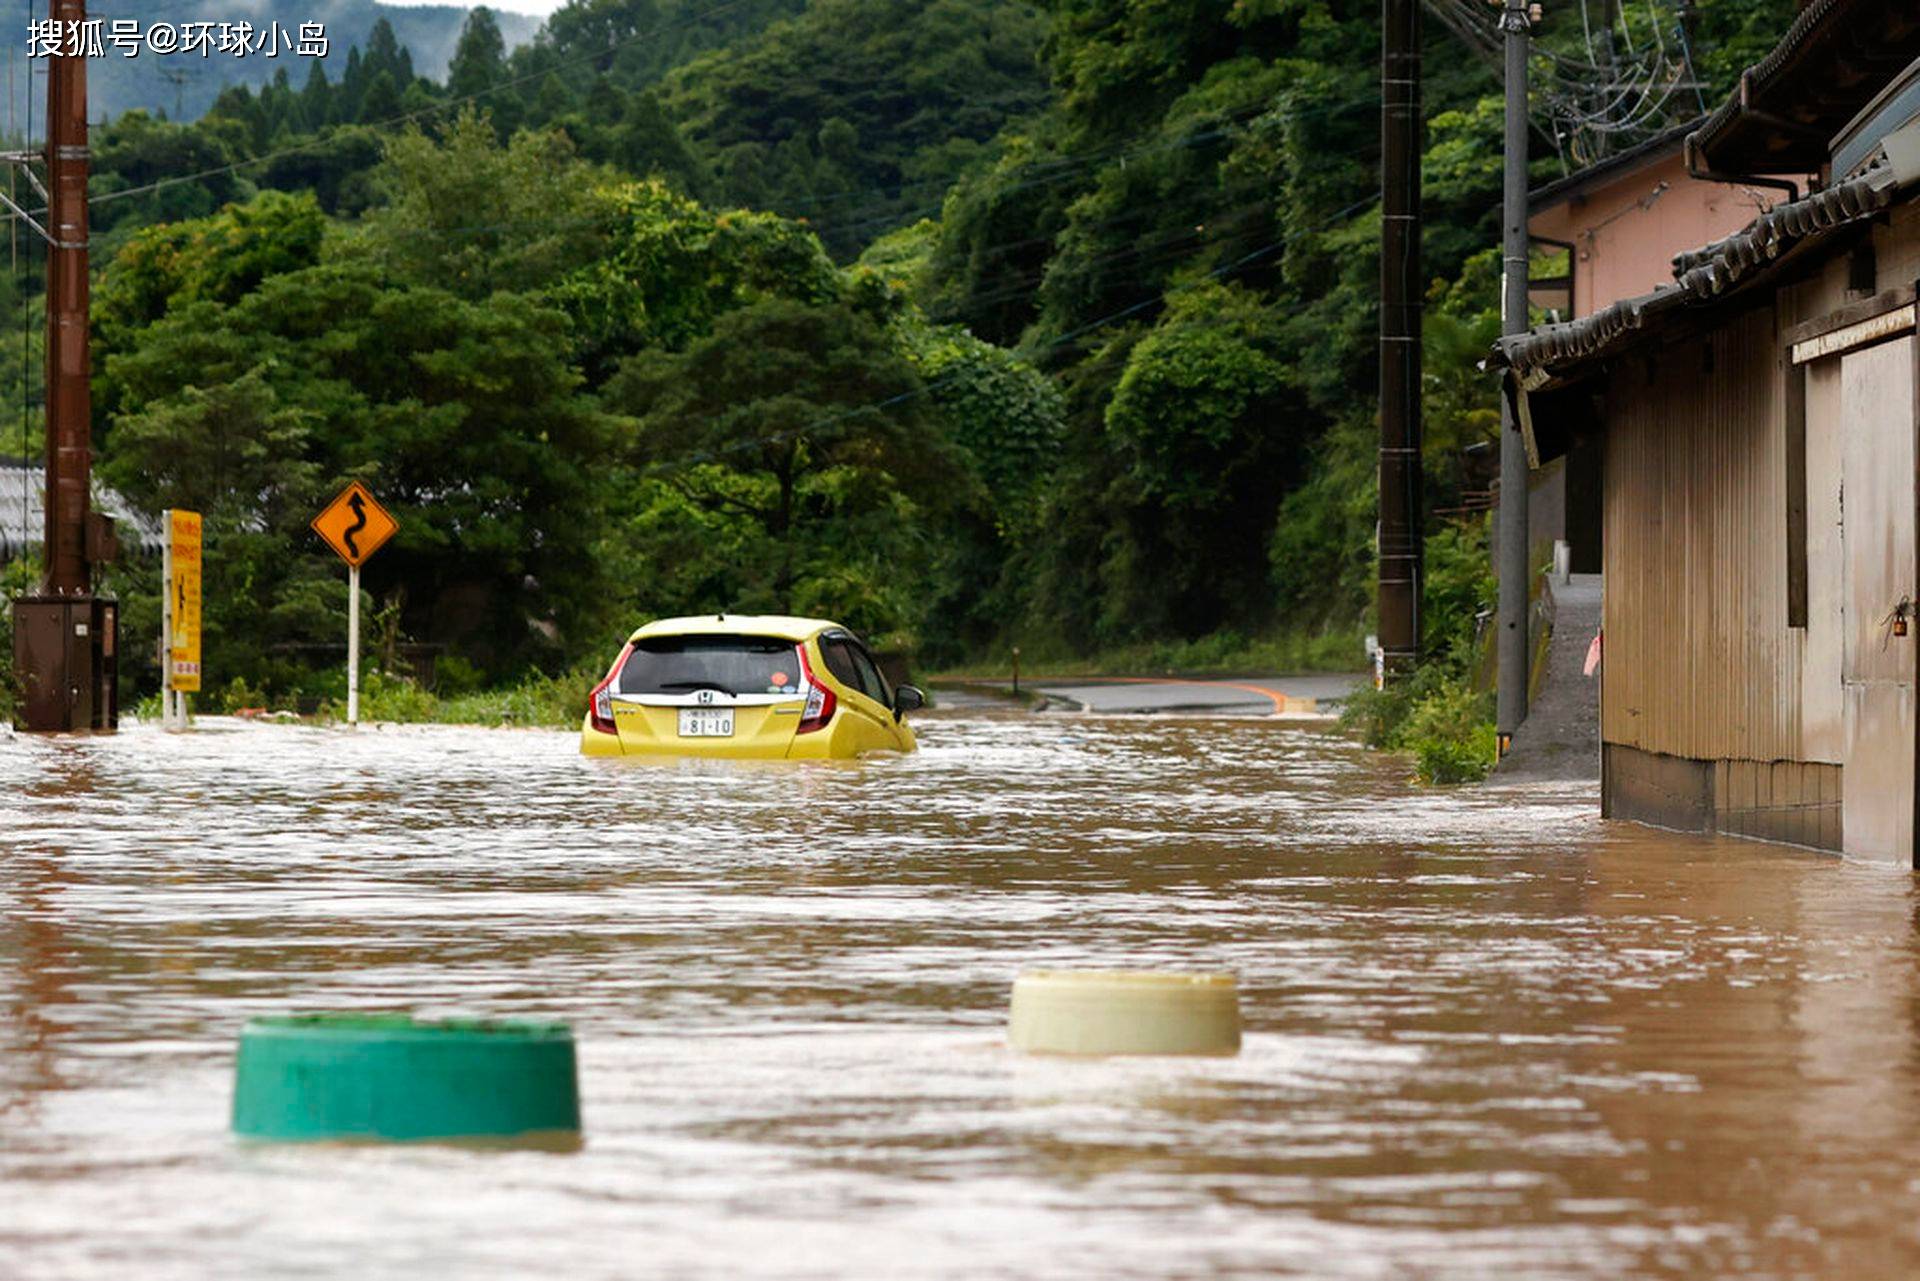 日本九州严重水灾20万人避难 熊本养老院14人无生命迹象